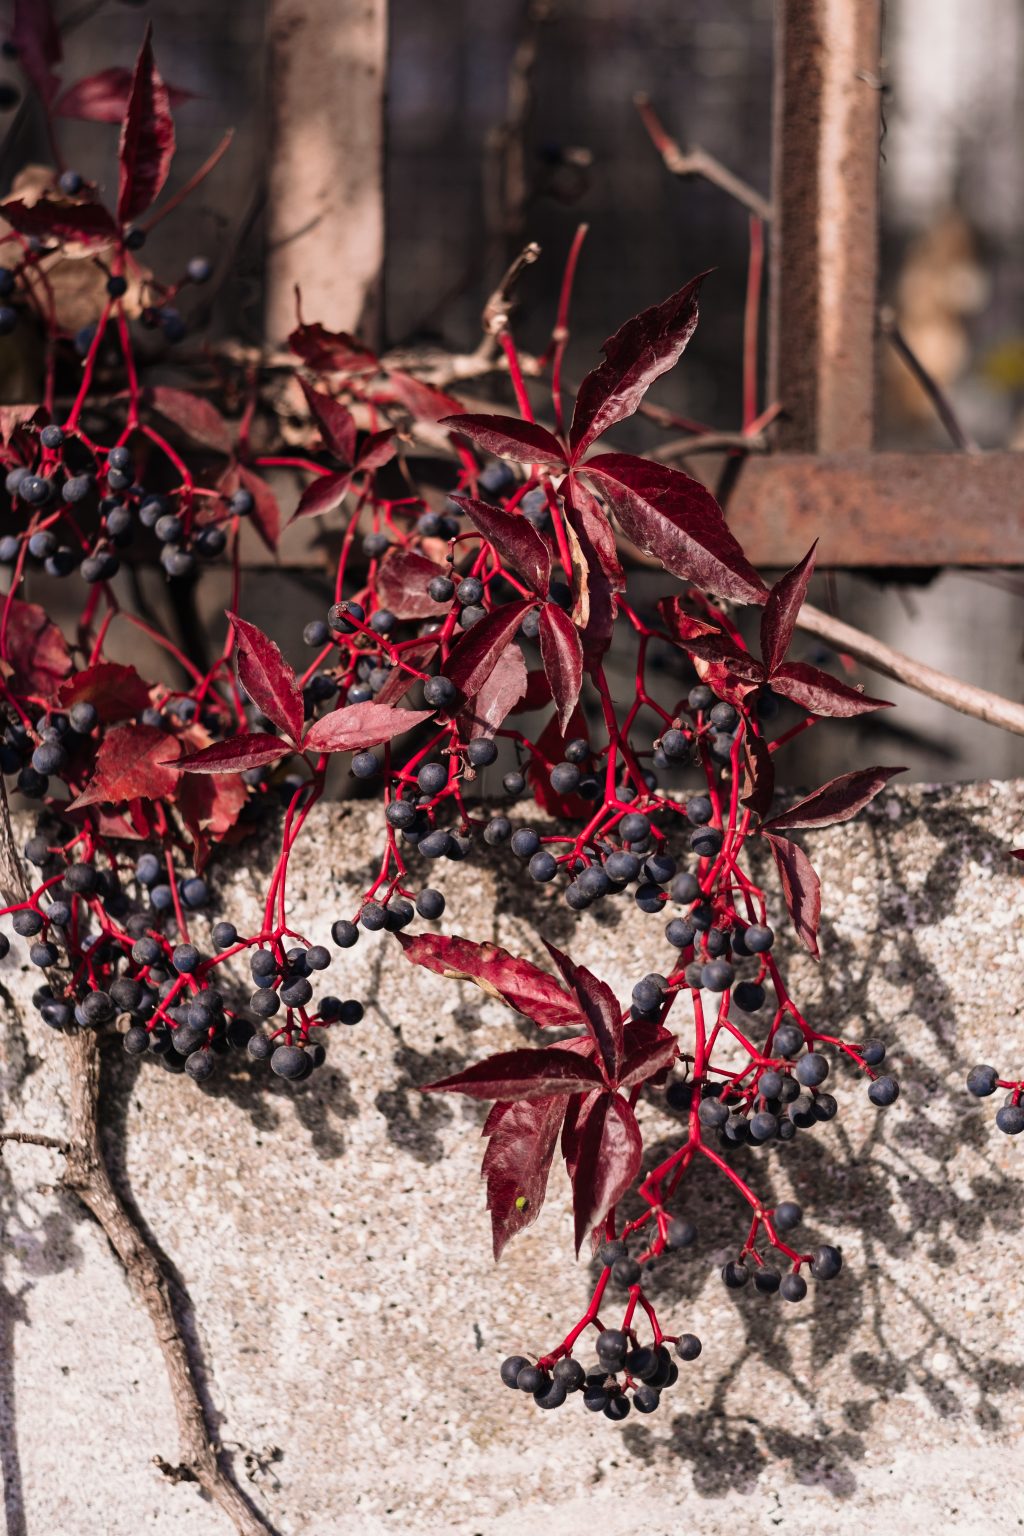 Ornamental grape plant in autumn 3 - free stock photo